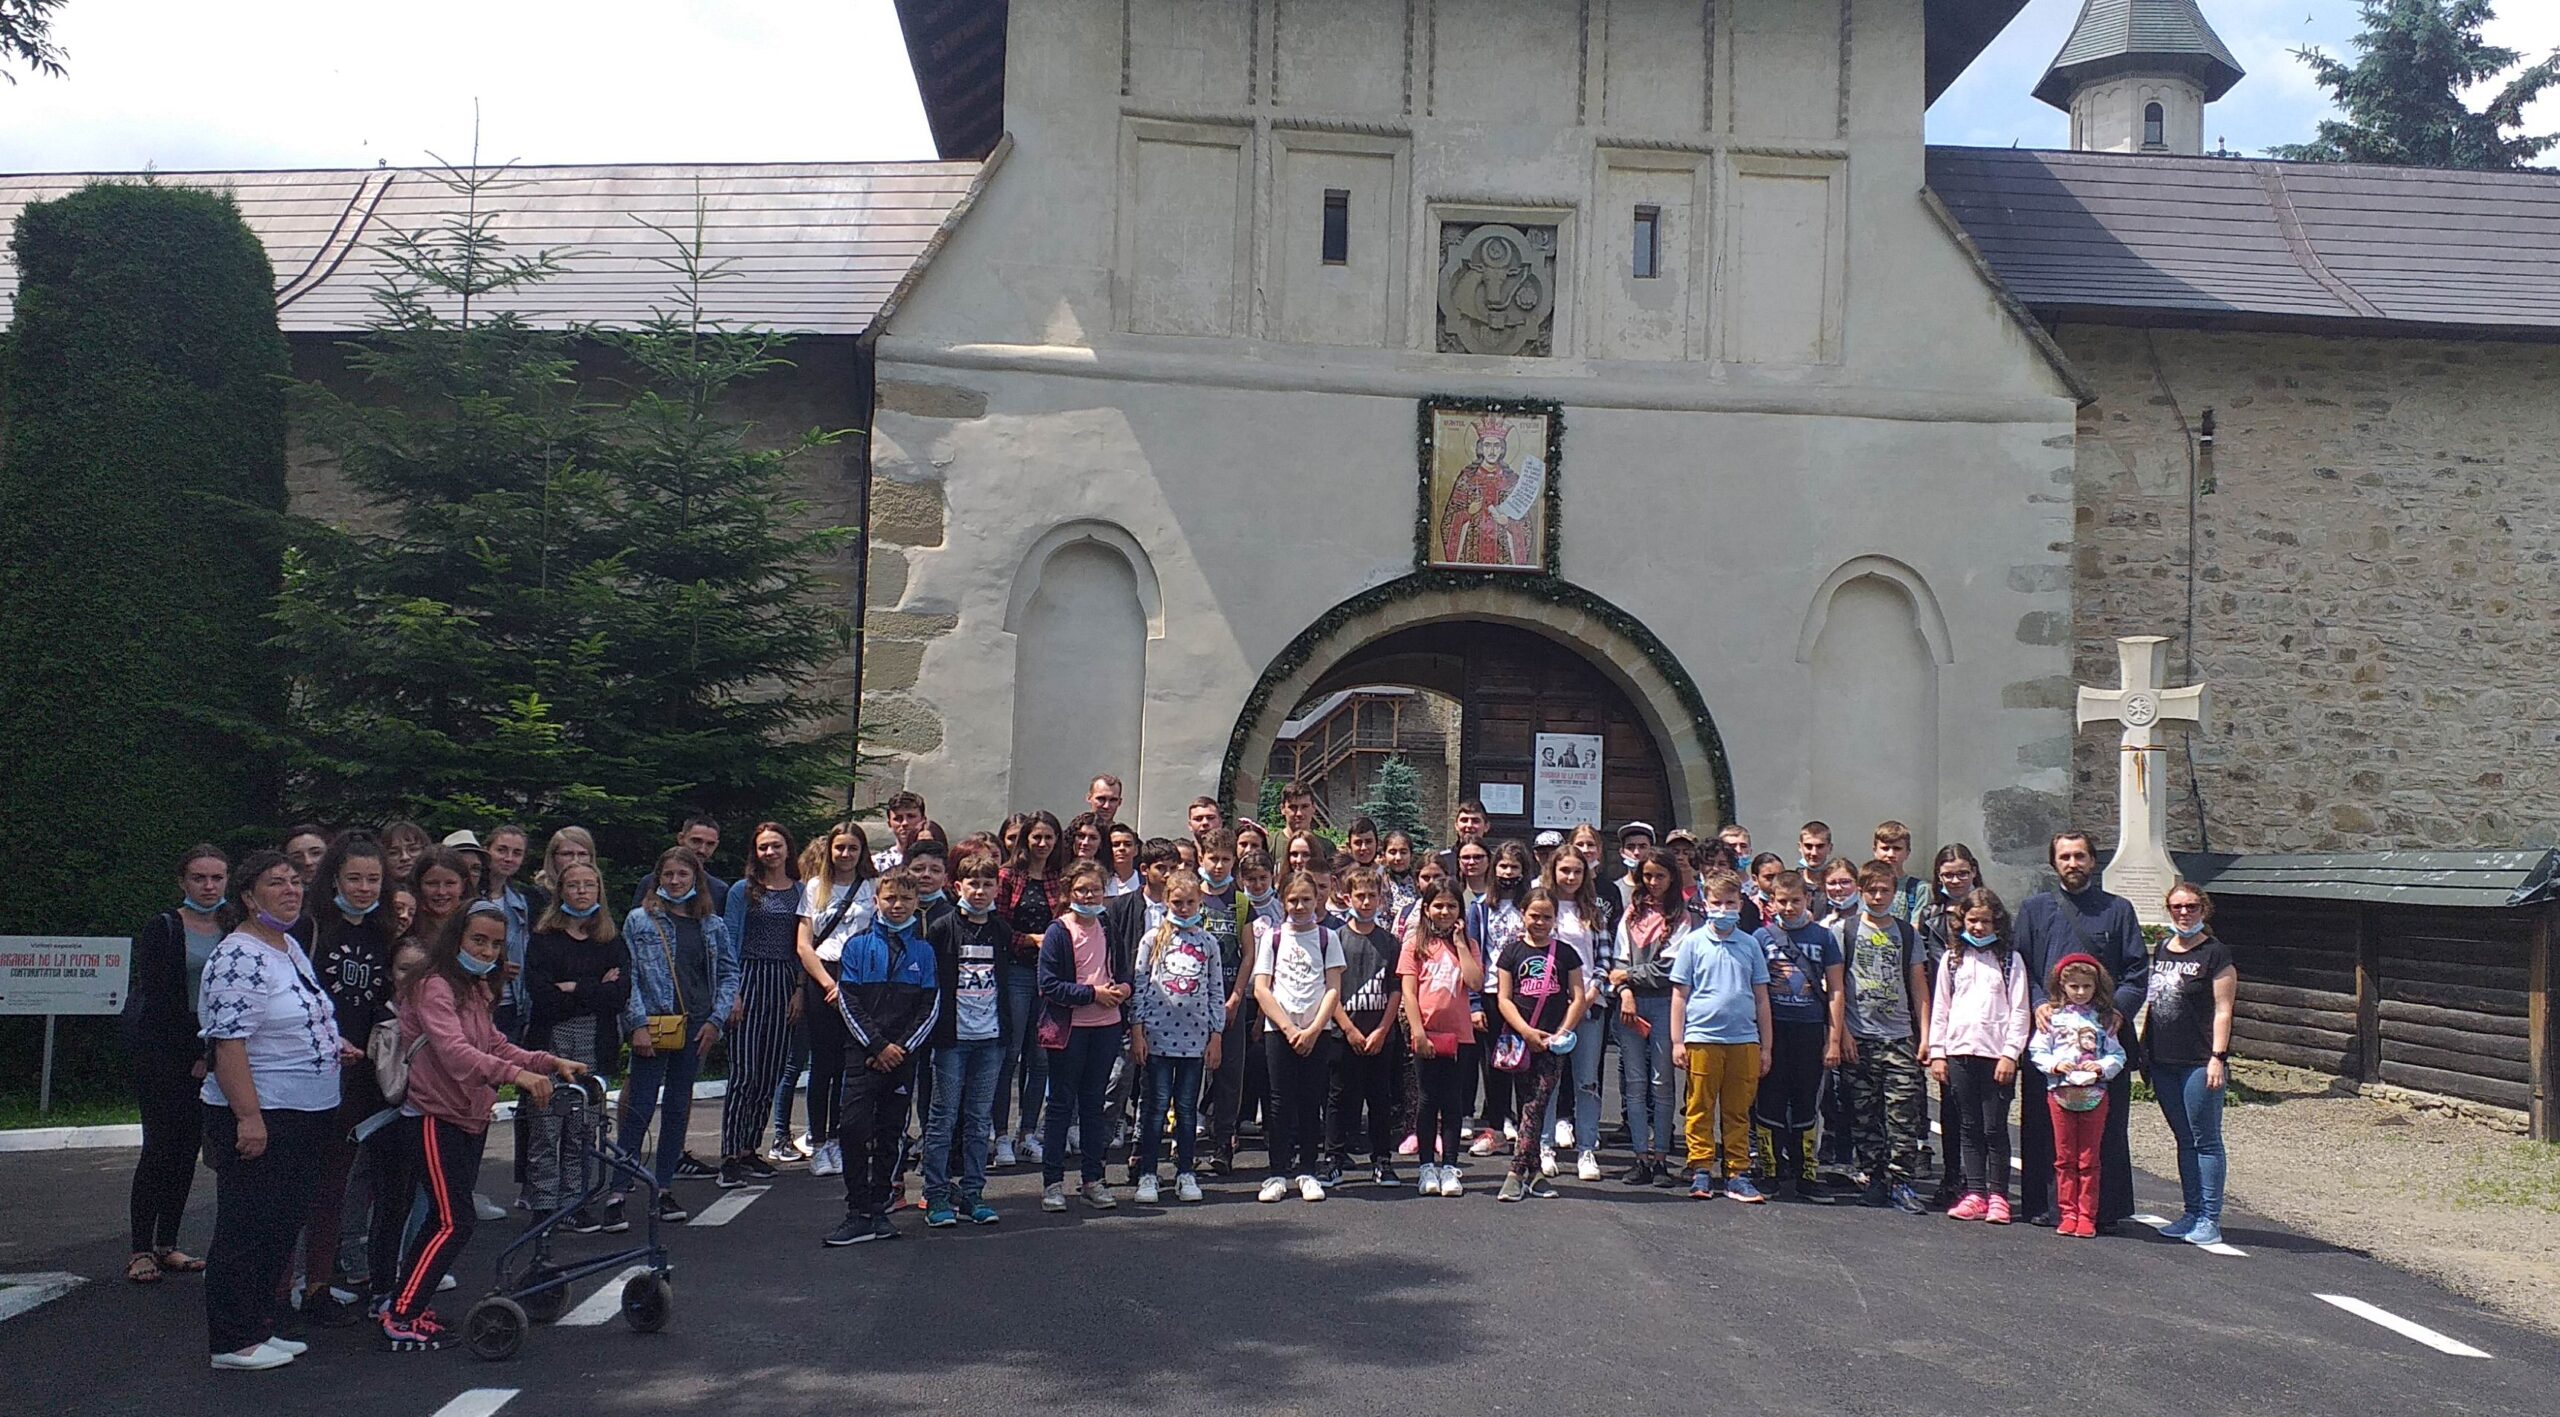 Elevii merituoși din Poienari, premiați cu o excursie la mănăstirile din nordul Moldovei